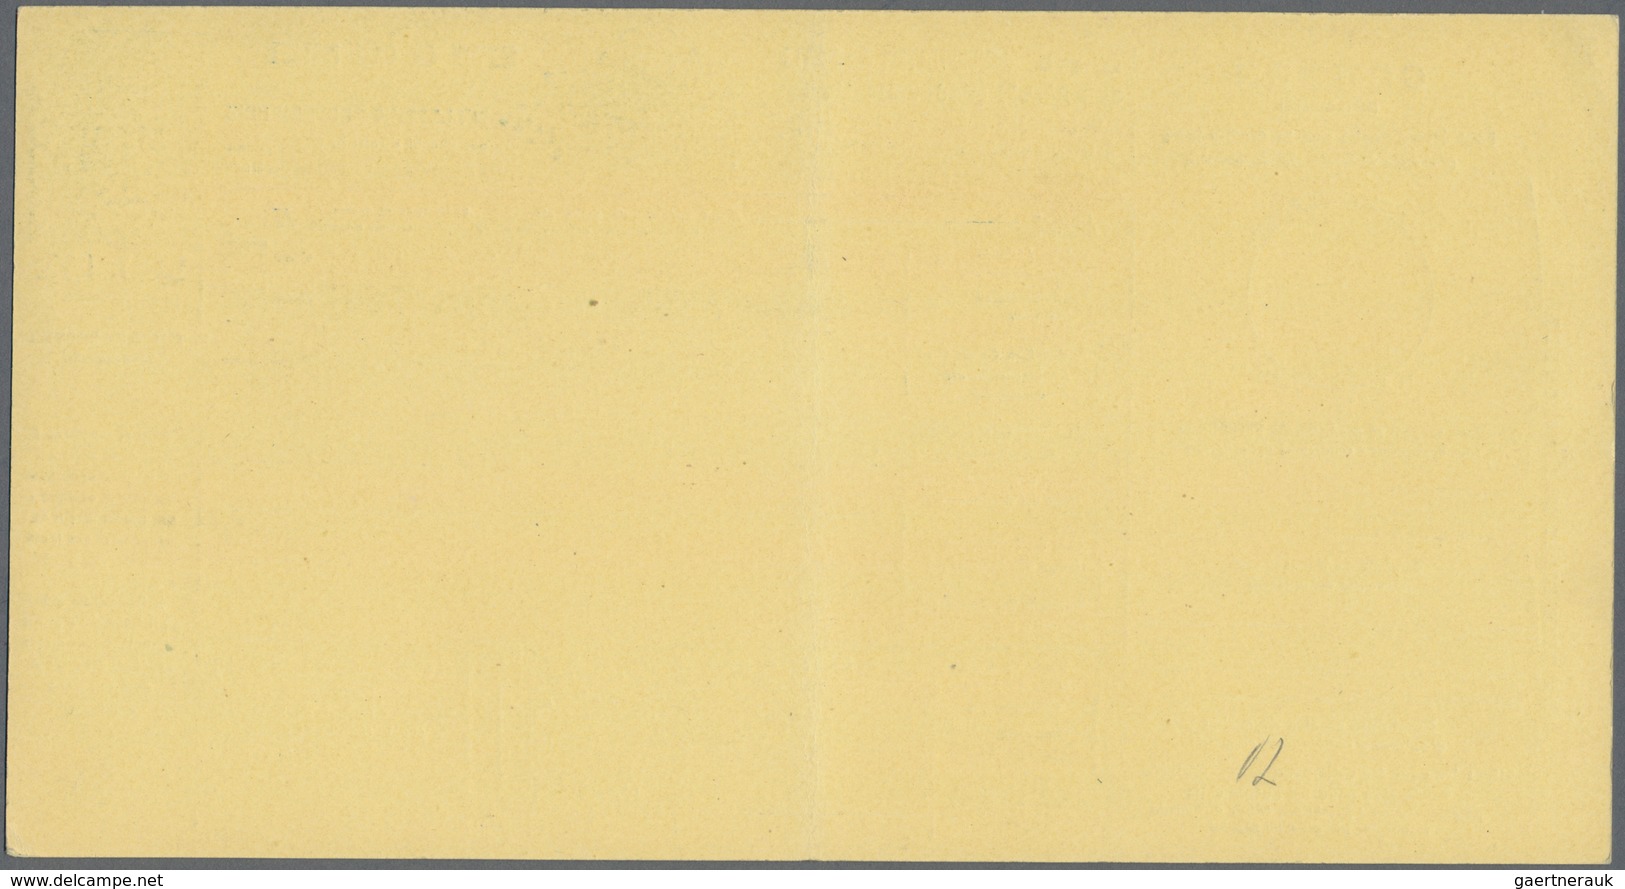 San Marino - Ganzsachen: 1890: six packet card, 0,25 - 2,70 L, mint.